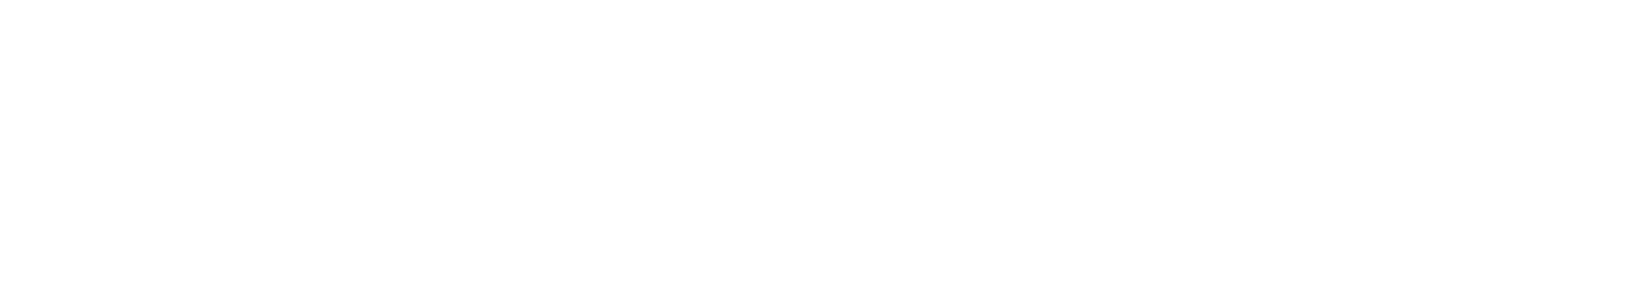 boyd-reward-logo